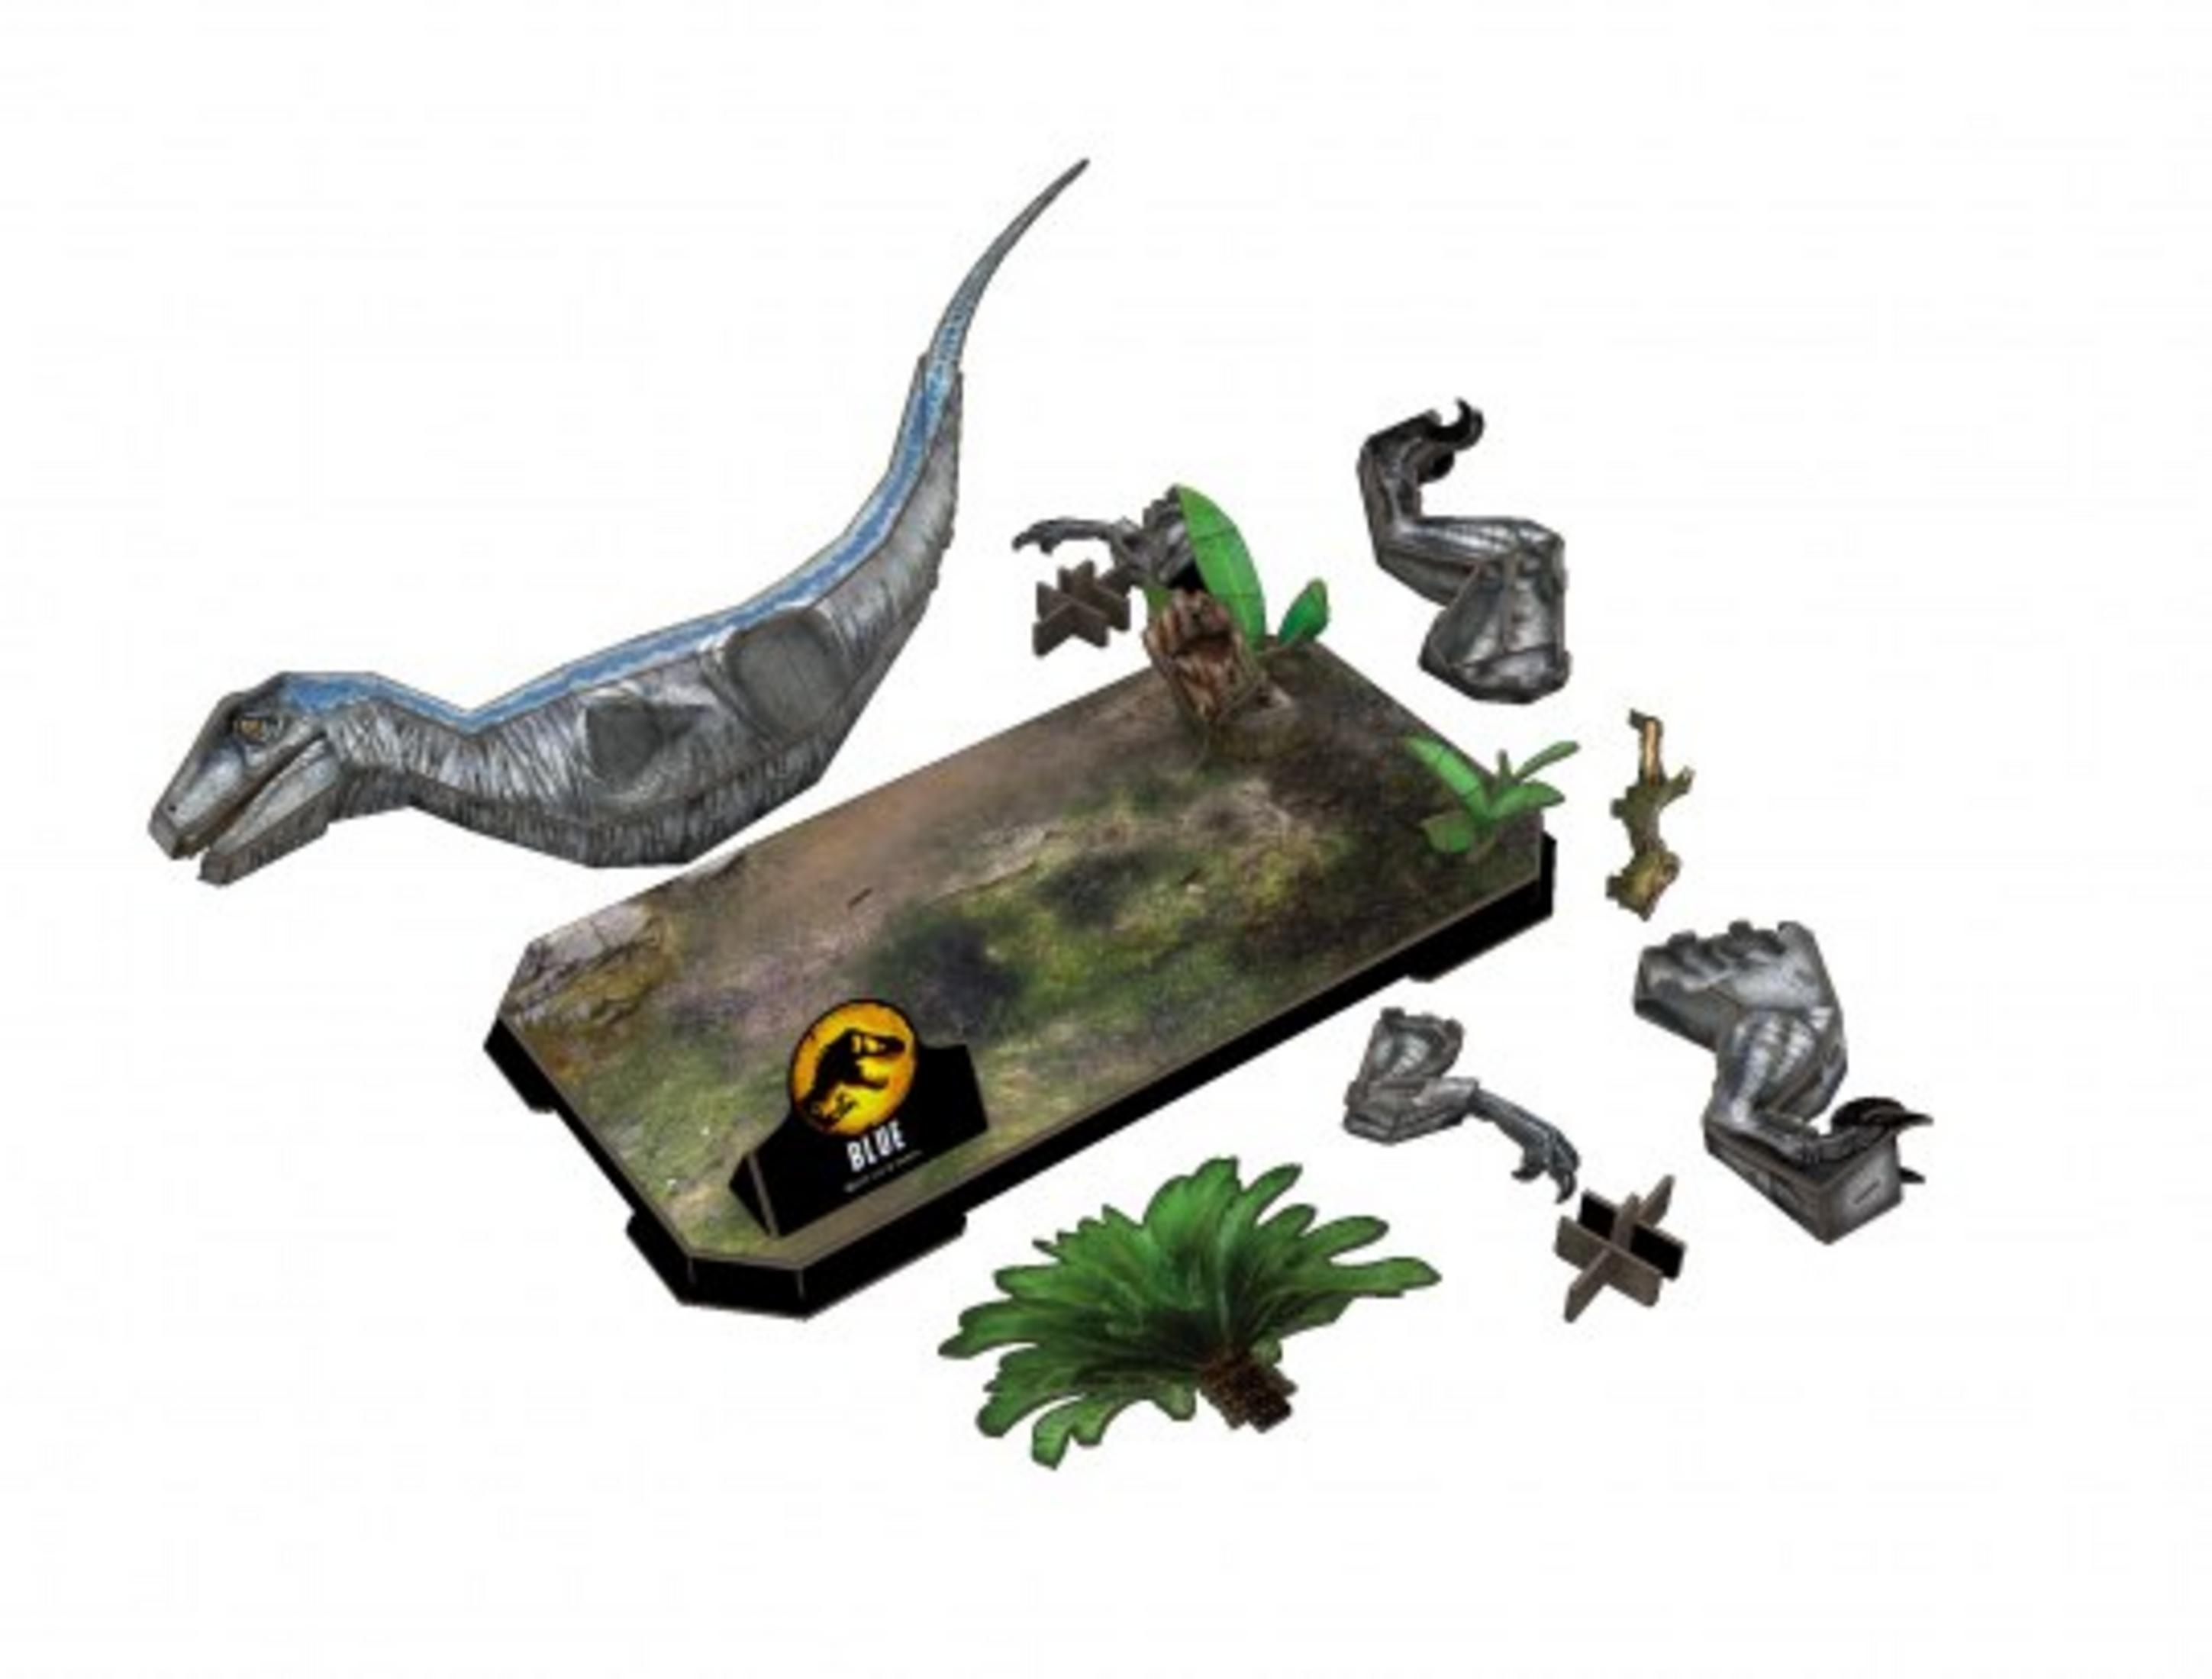 Jurassic neues Ein Zeitalter 3D World: Puzzle 3D Blue Puzzle REVELL